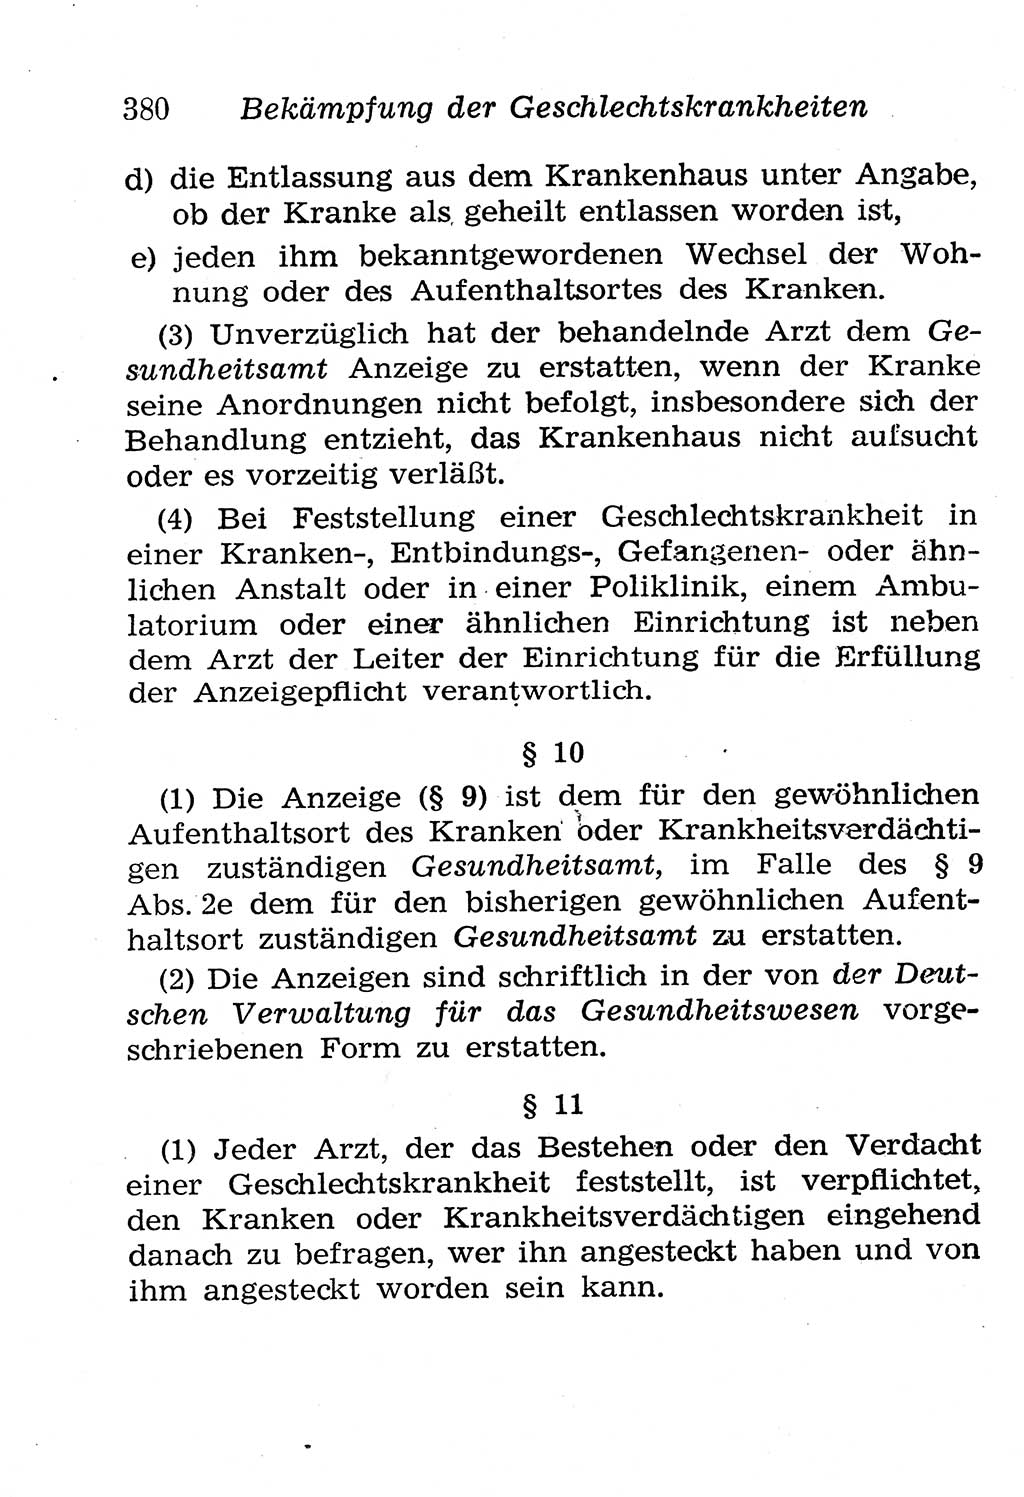 Strafgesetzbuch (StGB) und andere Strafgesetze [Deutsche Demokratische Republik (DDR)] 1958, Seite 380 (StGB Strafges. DDR 1958, S. 380)